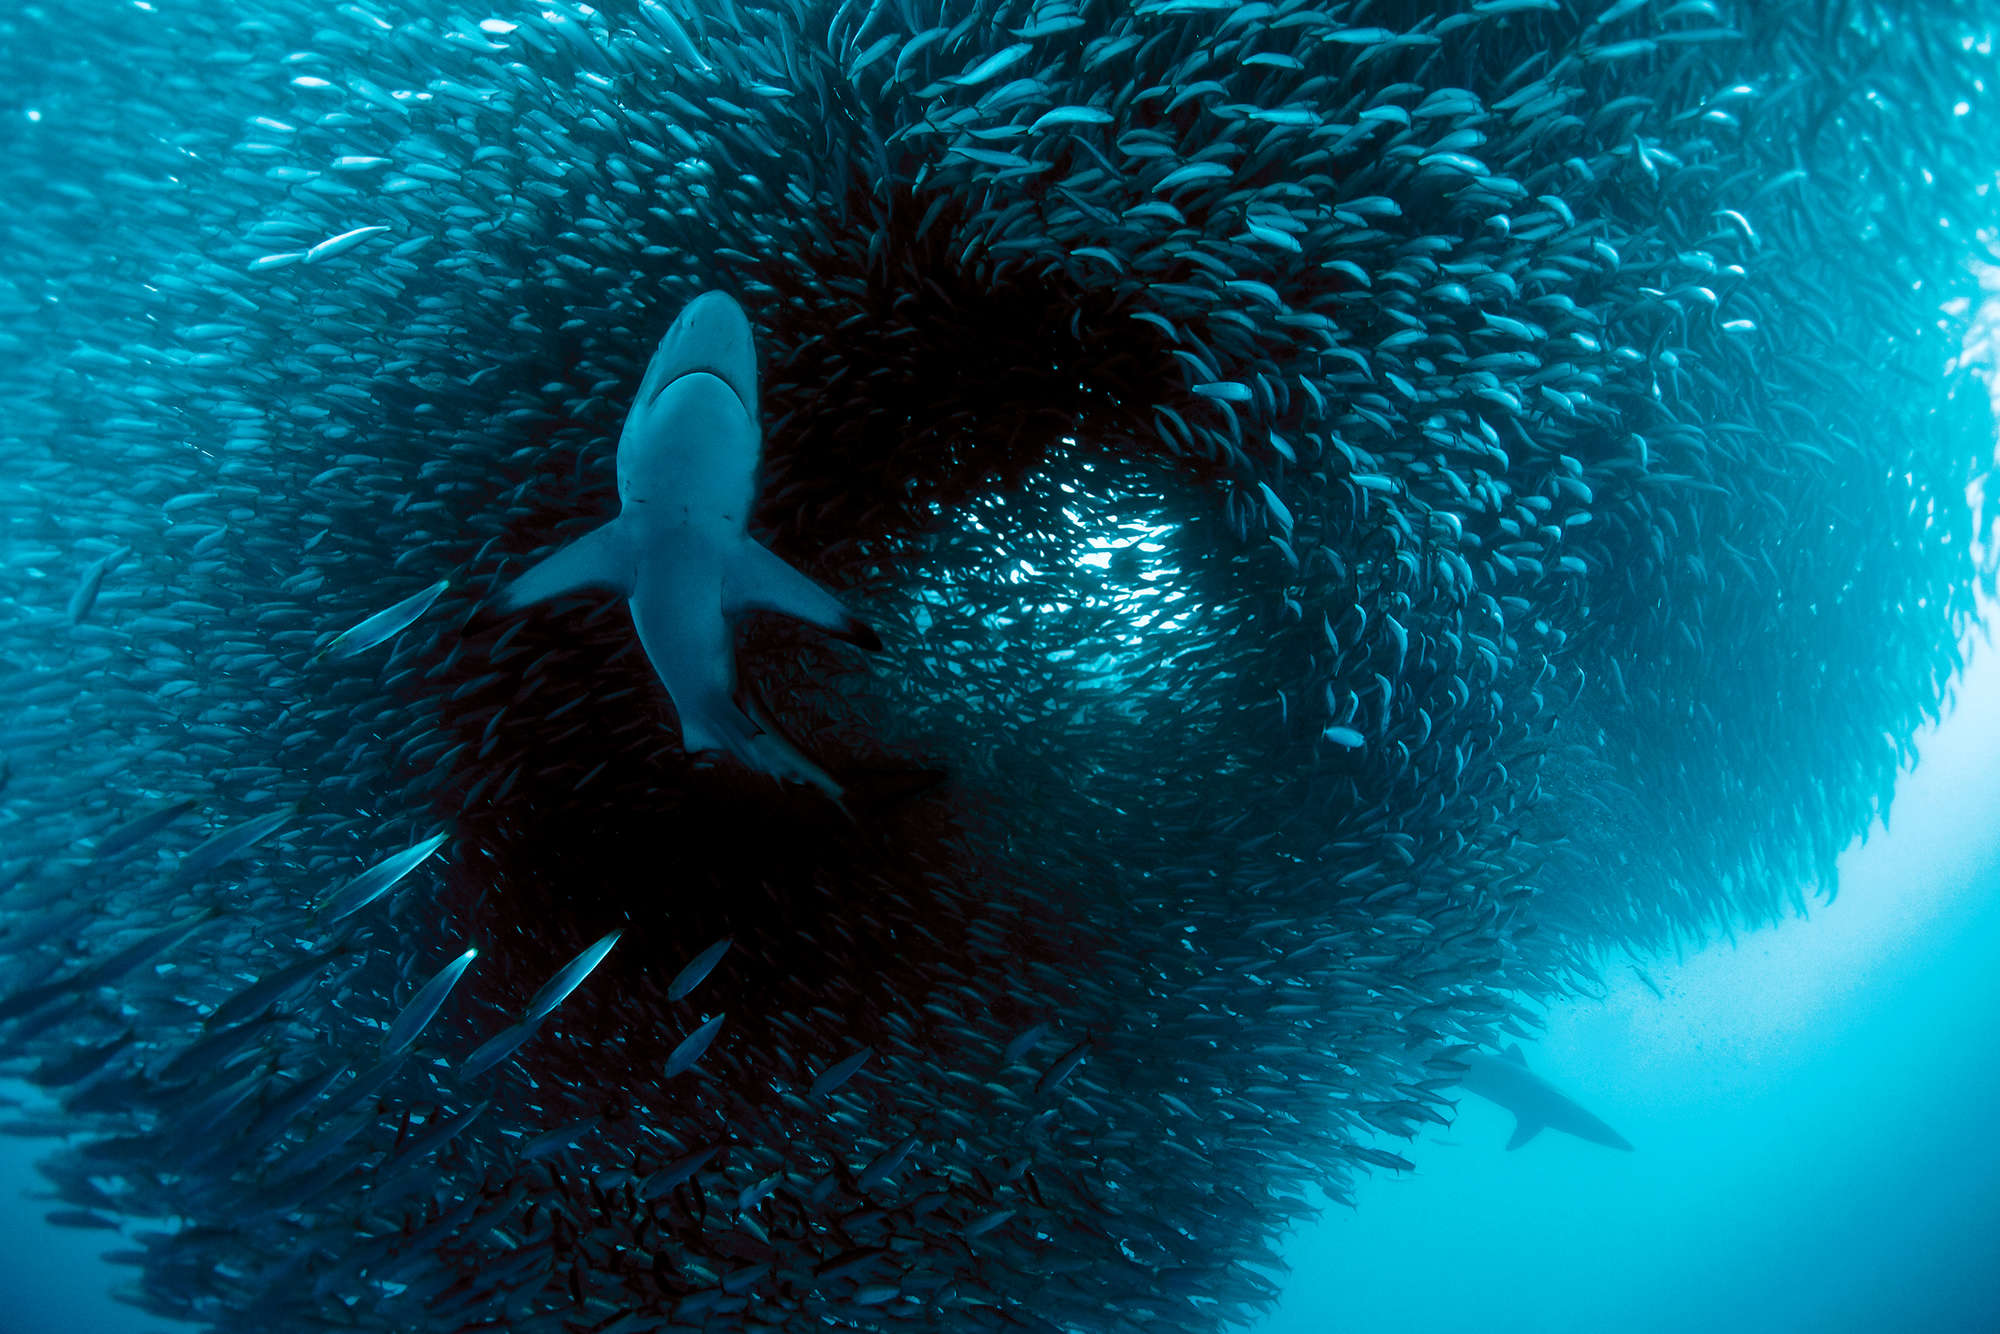             Meeres Fototapete mit Hai beim jagen auf Premium Glattvlies
        